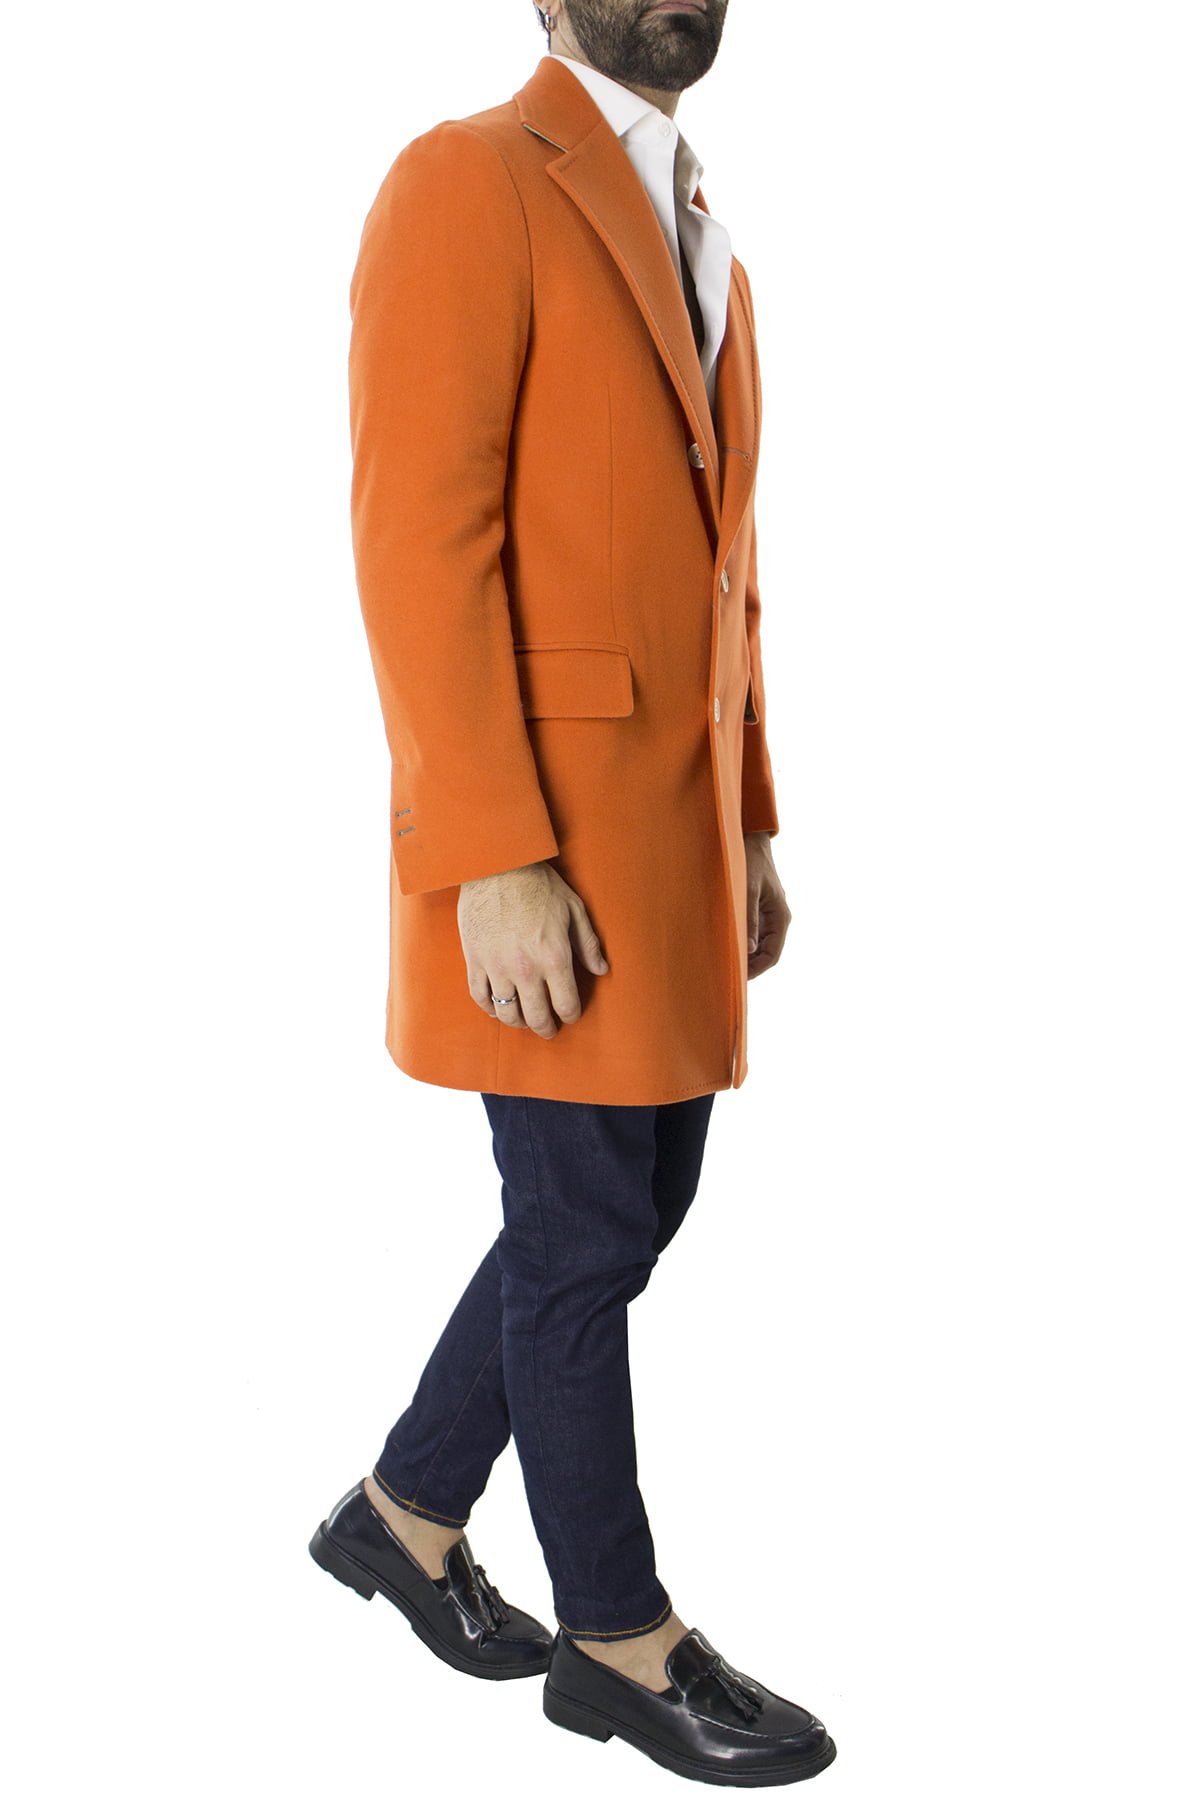 Cappotto uomo arancio monopetto in lana rever largo made in italy